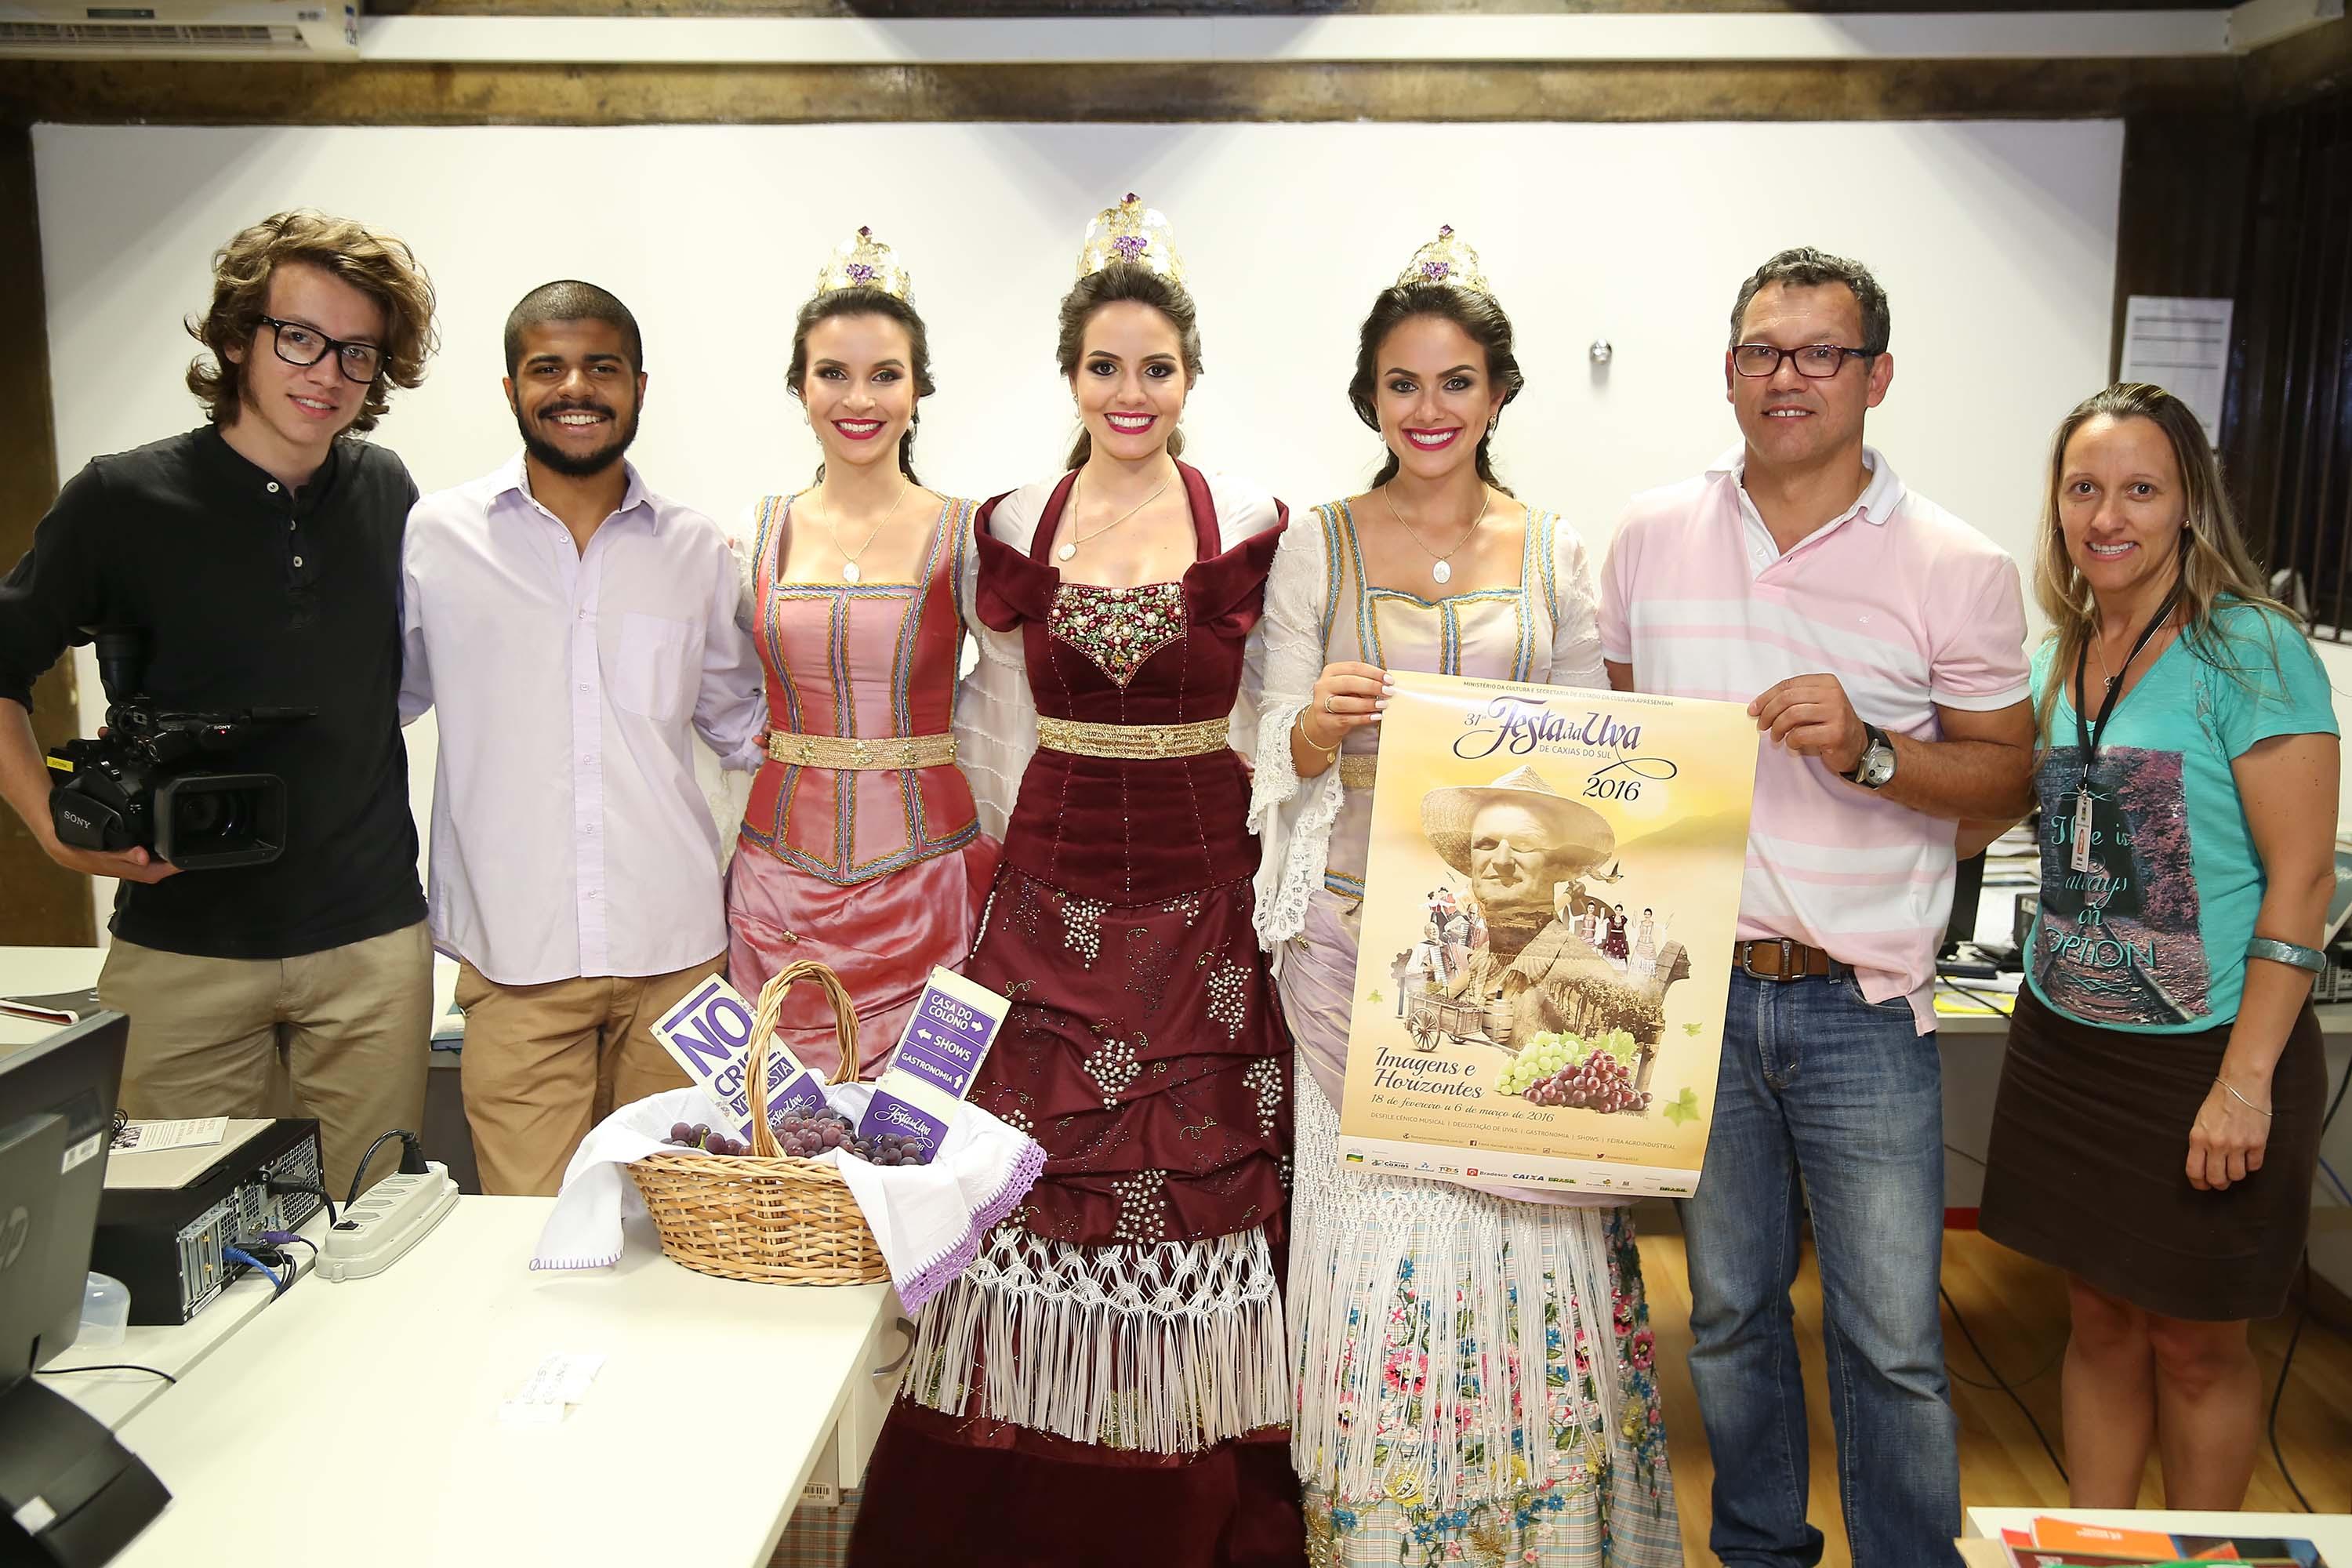 Soberanas da Festa da Uva 2016 visitam a TV Câmara Caxias